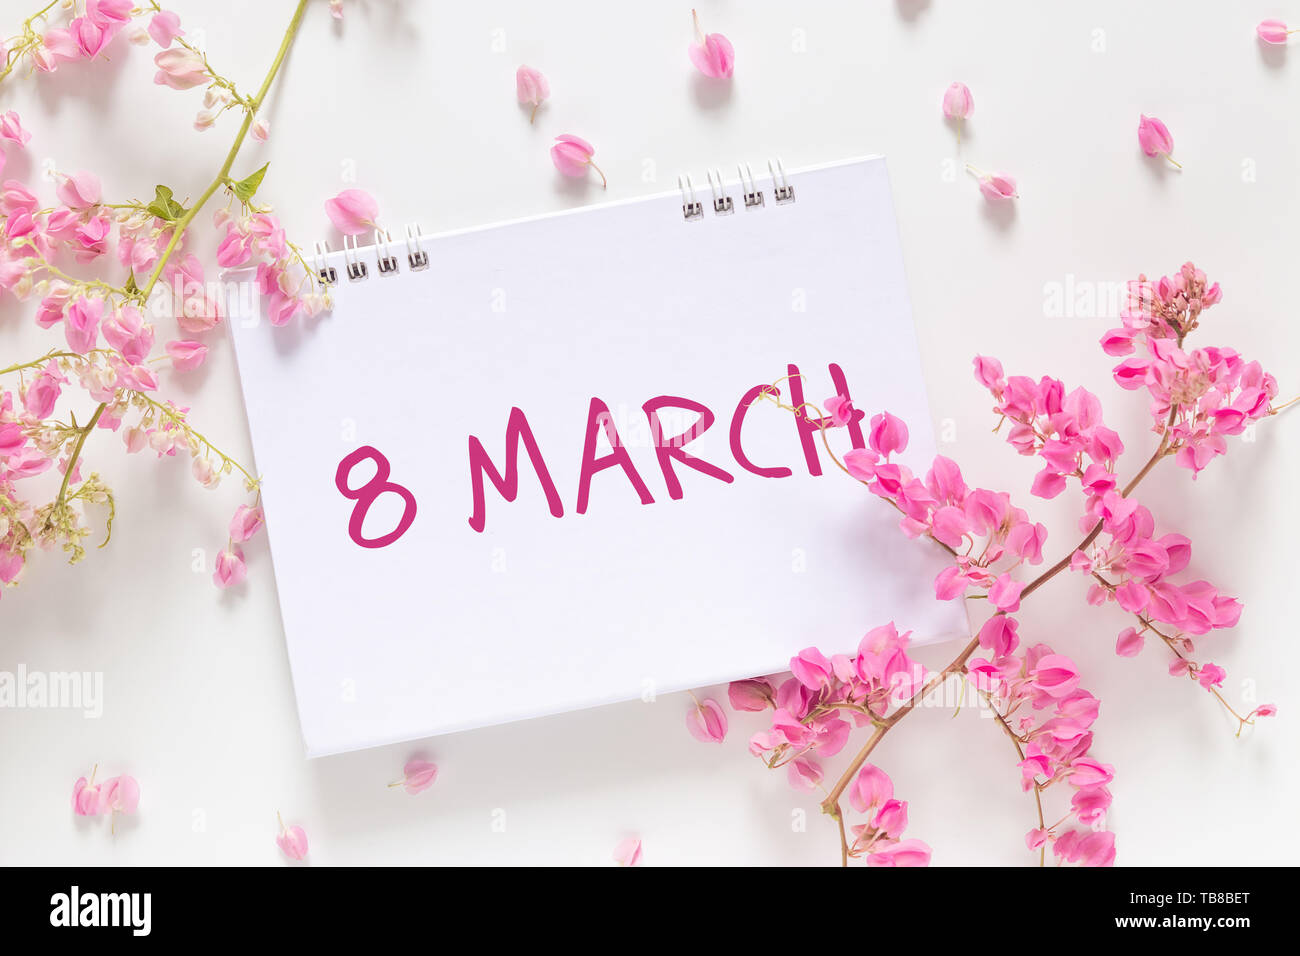 La Giornata internazionale della donna. piana di laici calendario vuoto con le parole "arch 8' decorare con fiore rosa isolato su sfondo bianco Foto Stock